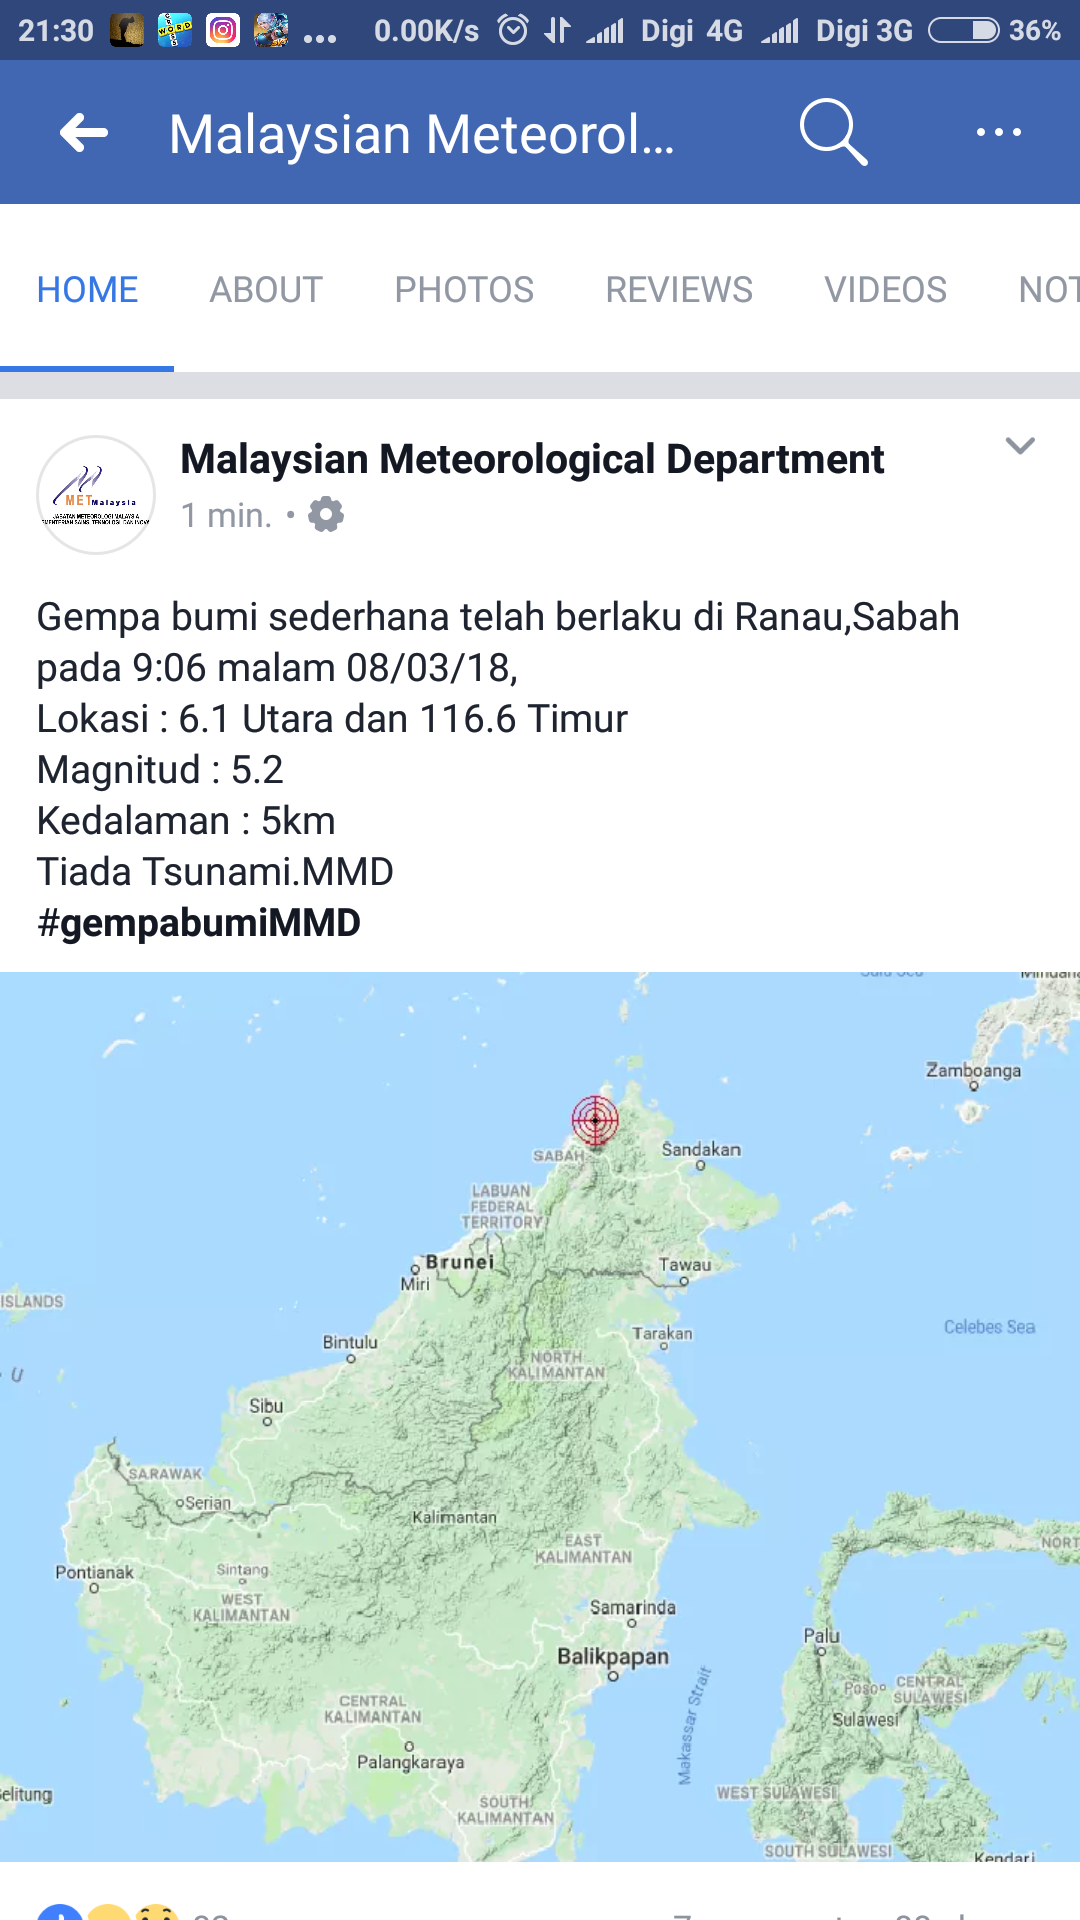 Gegaran Gempa Bumi KK, Sabah 8 Mac 2018